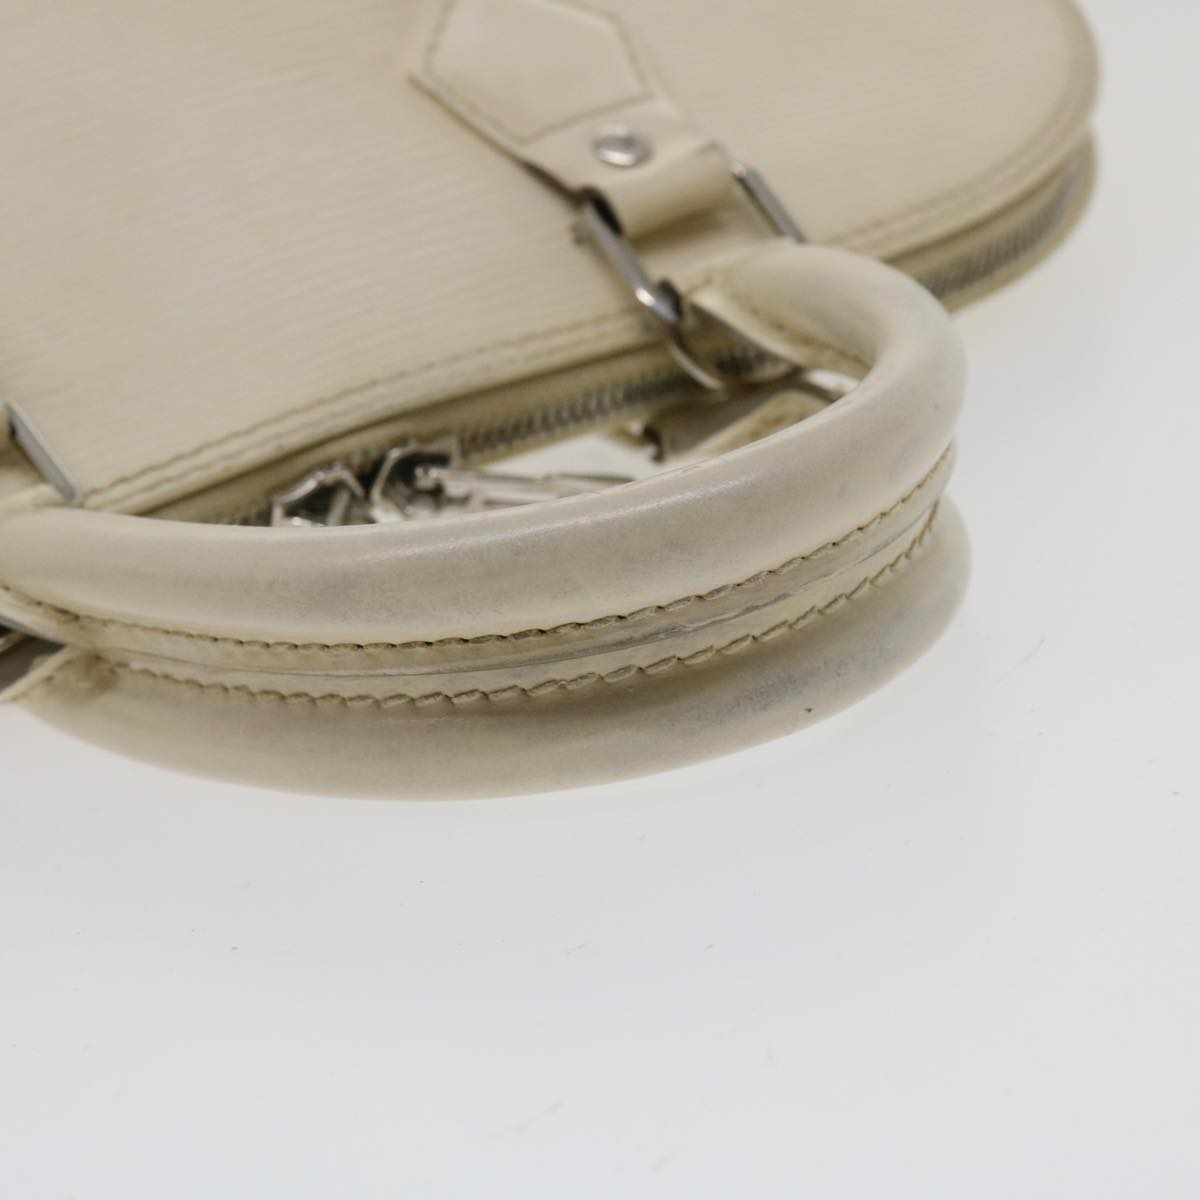 Louis Vuitton Alma Handbag 368286